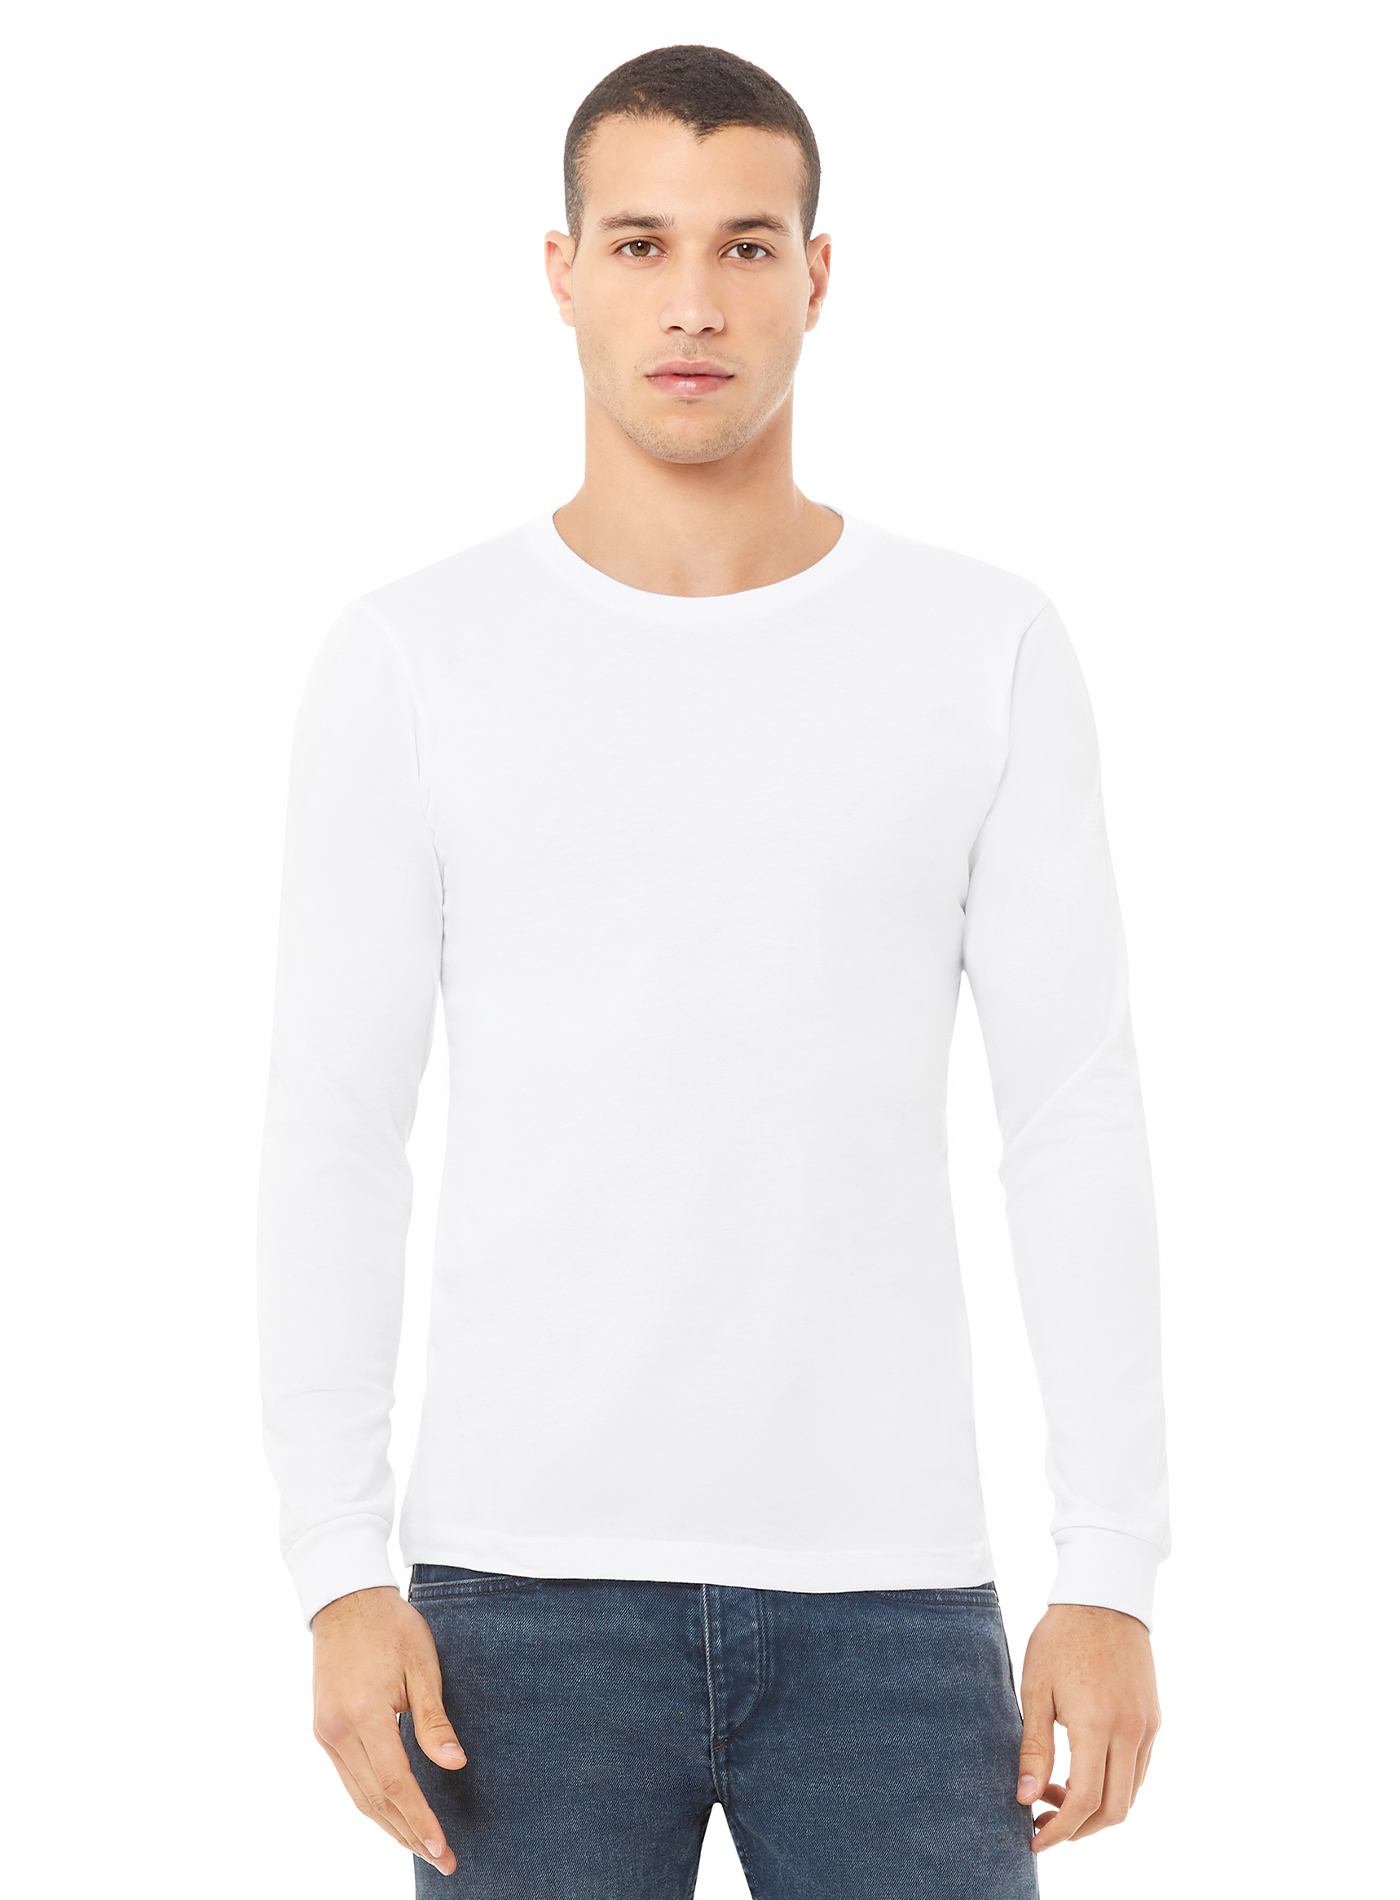 Pánské tričko Jersey - Bílá M